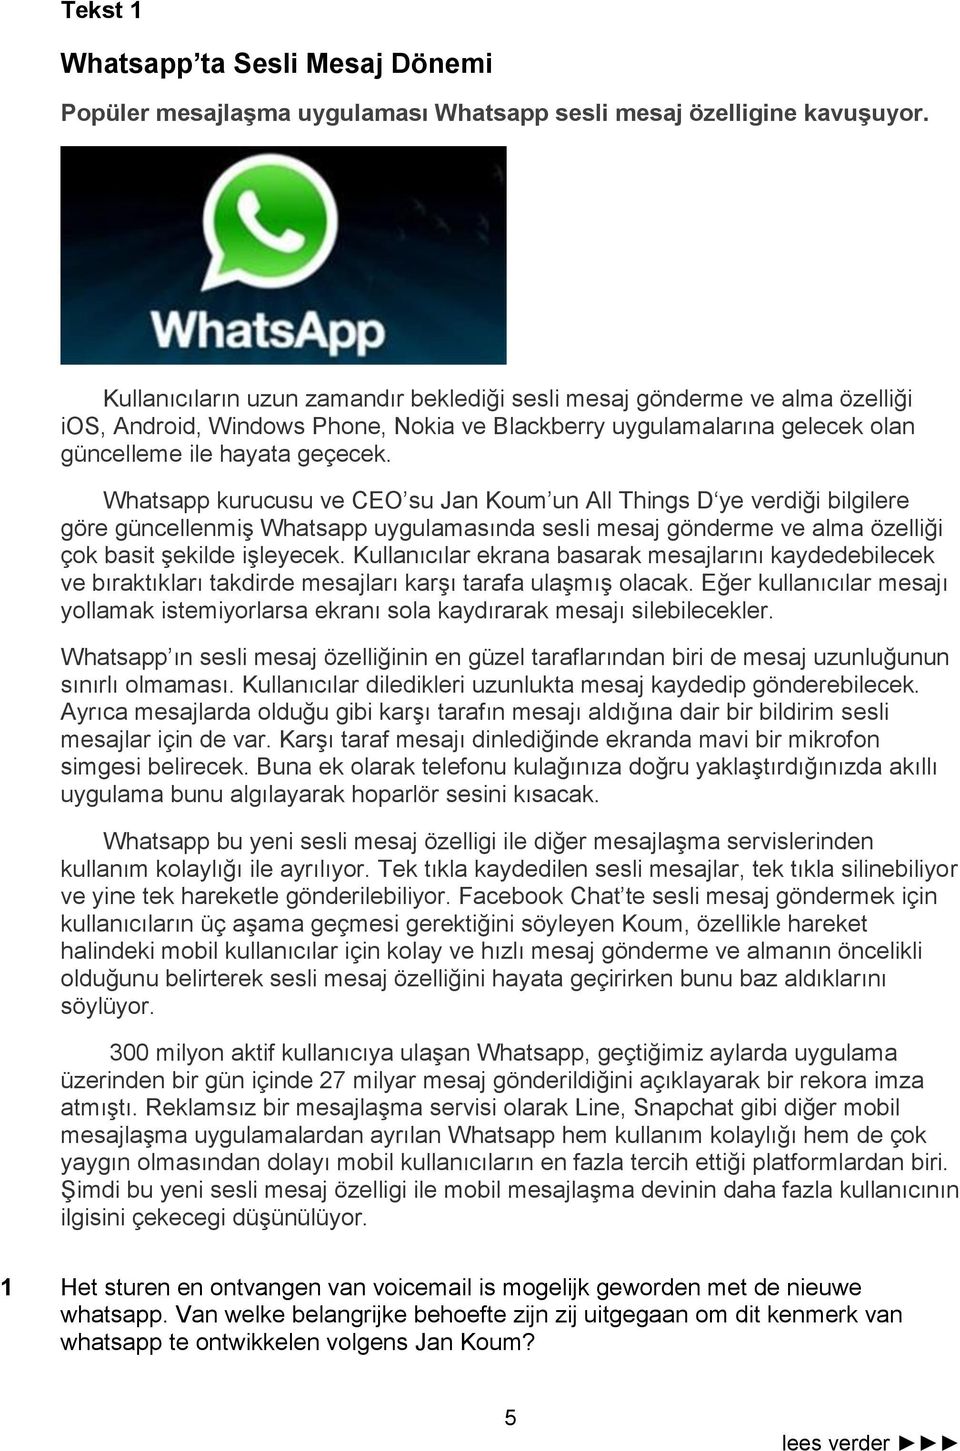 Whatsapp kurucusu ve CEO su Jan Koum un All Things D ye verdiği bilgilere göre güncellenmiş Whatsapp uygulamasında sesli mesaj gönderme ve alma özelliği çok basit şekilde işleyecek.